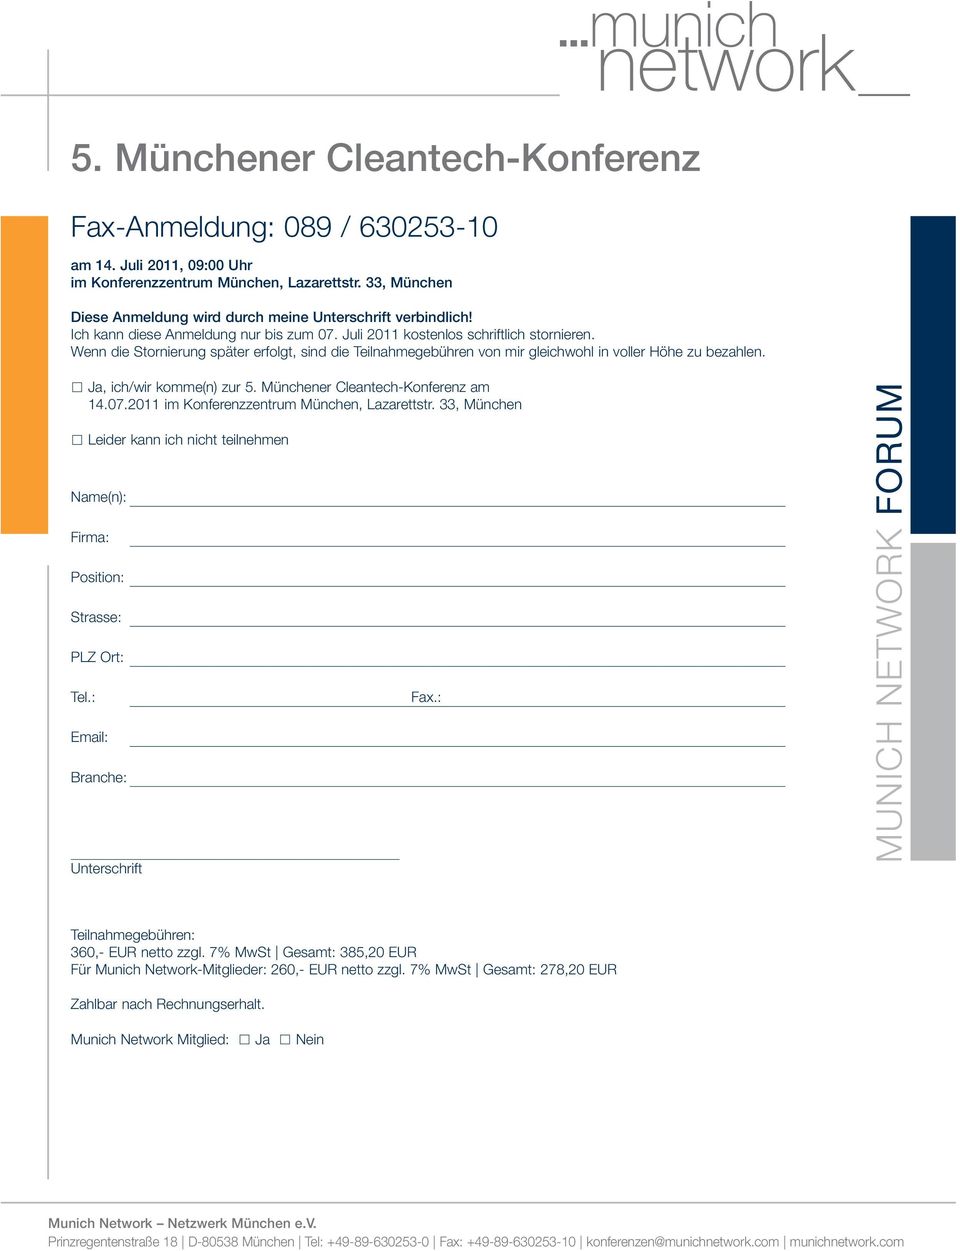 Ja, ich/wir komme(n) zur 5. Münchener Cleantech-Konferenz am 14.07.2011 im Konferenzzentrum München, Lazarettstr.